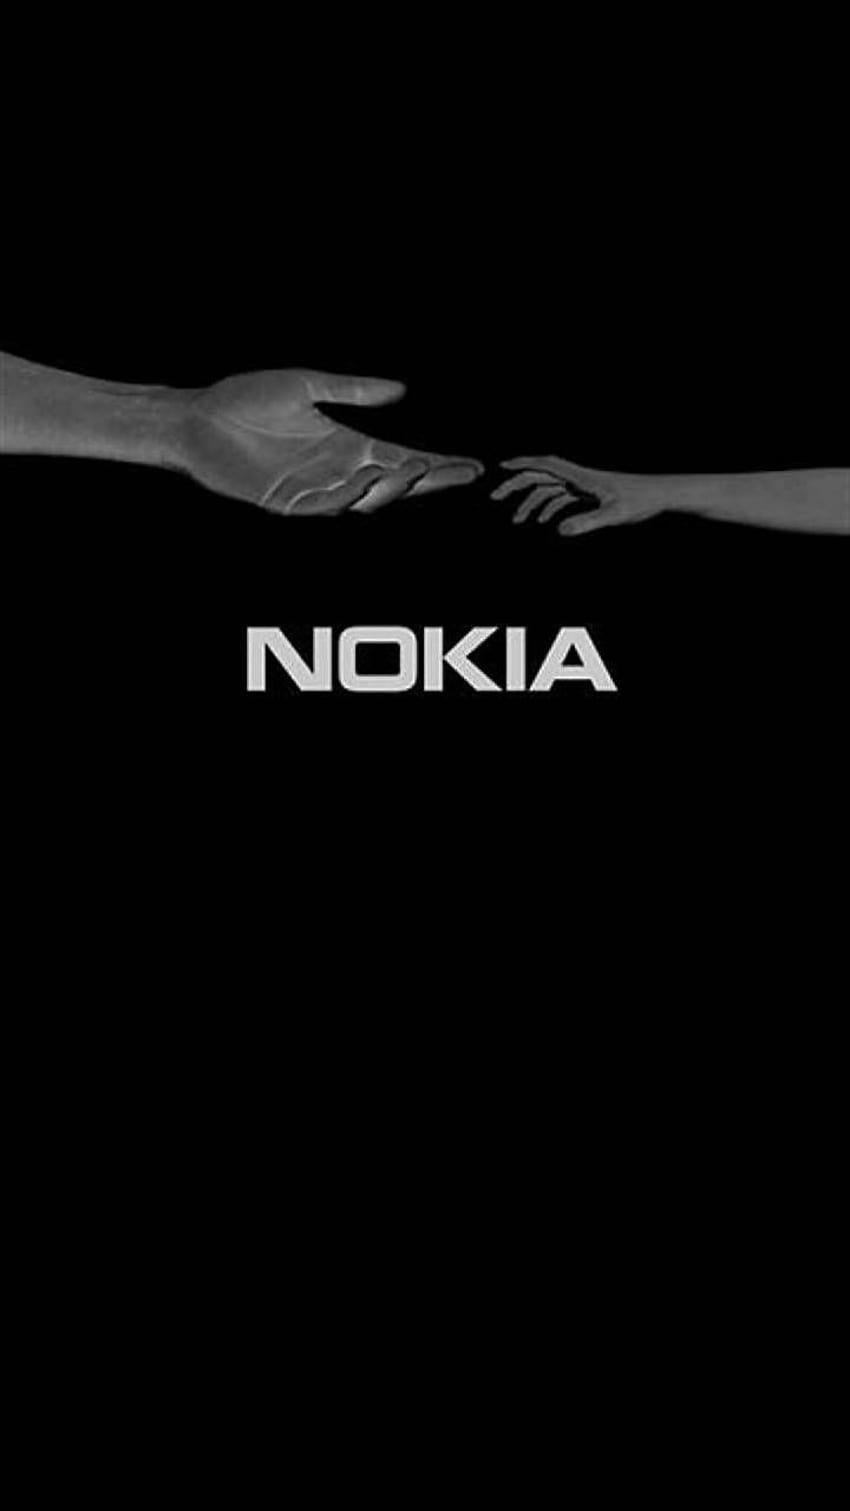 Hãy khám phá hình ảnh Nokia 3310 để nhớ lại những kỷ niệm tuổi thơ đáng yêu với chiếc điện thoại cổ điển này! Điện thoại bền vững và thiết kế độc đáo đã trở nên kinh điển và luôn giữ được sự quan tâm của người dùng.